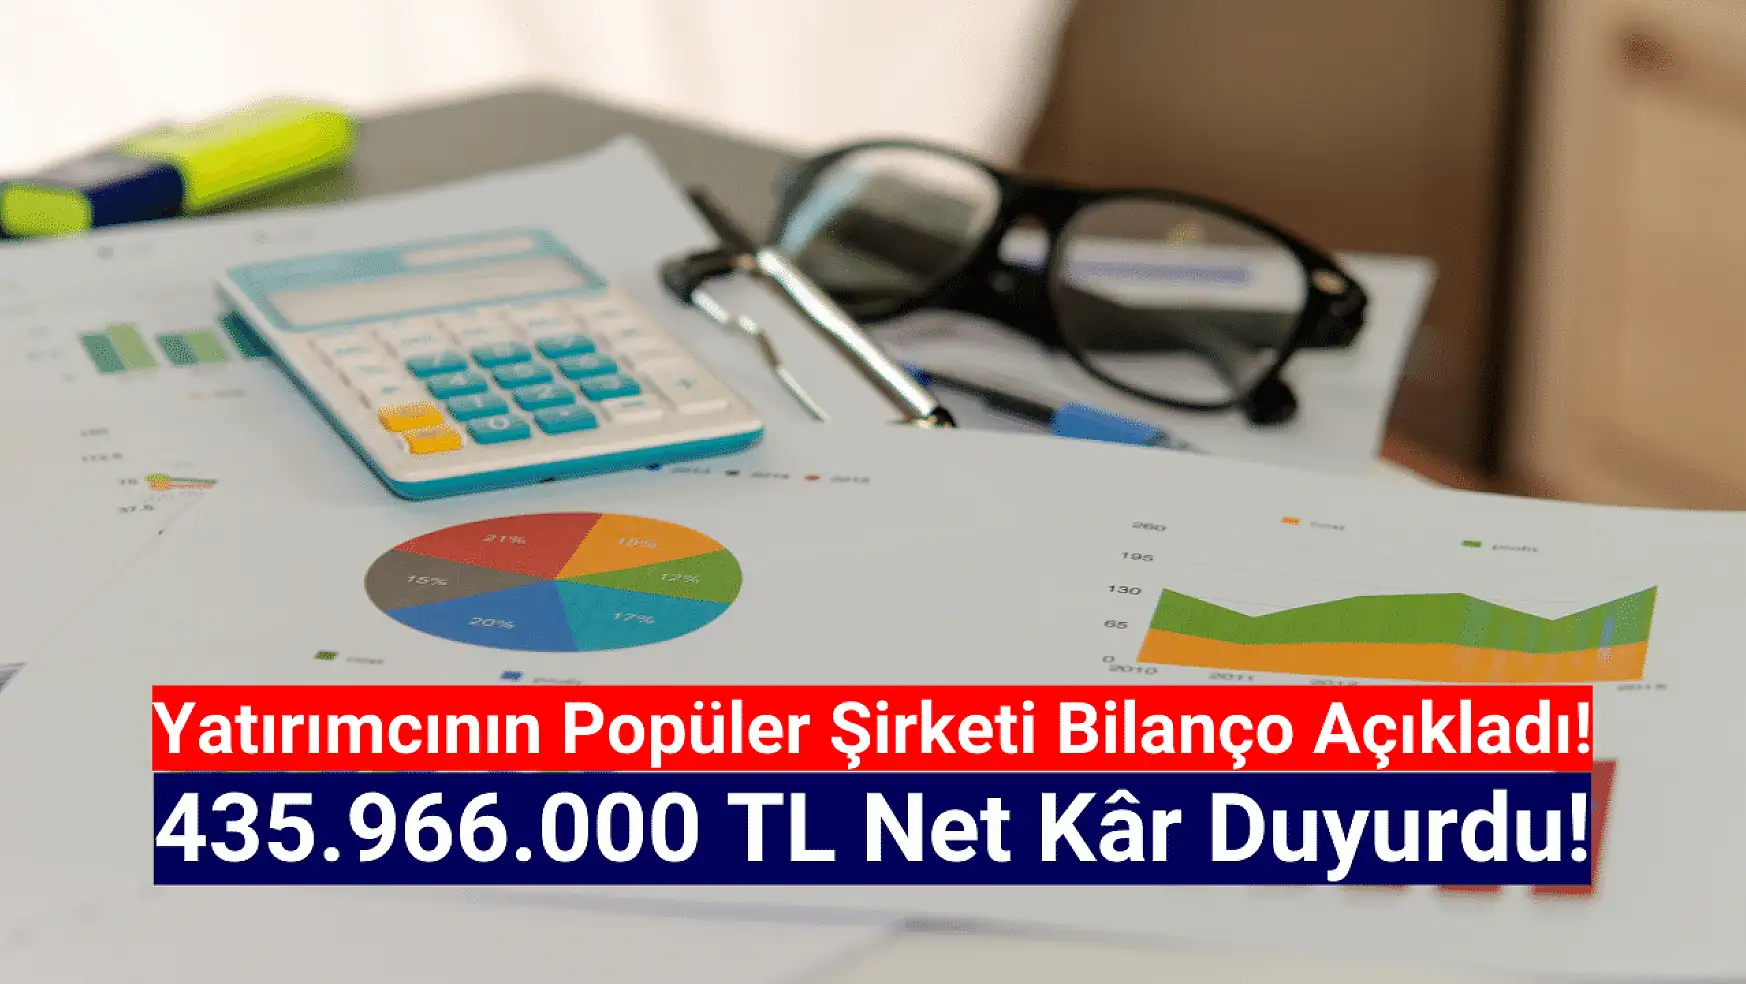 Borsanın popüler şirketi 435.966.000 TL net kâr açıkladı!